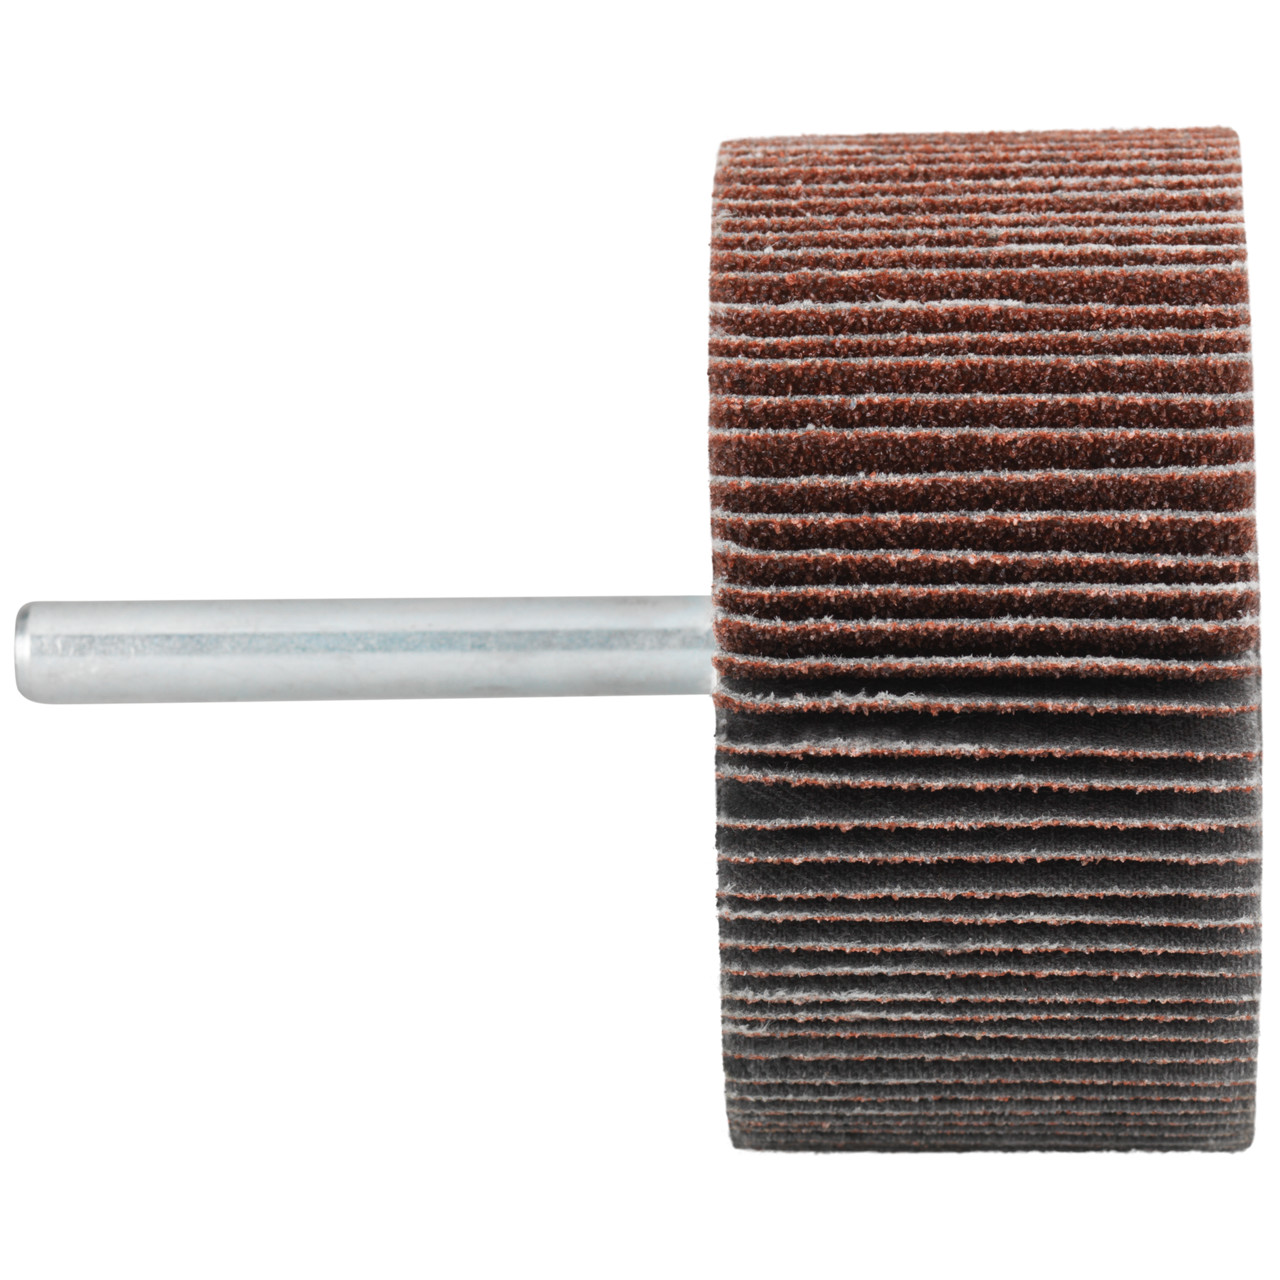 Tyrolit A-P01 C X Pennen DxD 60x40 Voor staal, roestvast staal en non-ferrometalen, P40, vorm: 52LA, Art. 817012